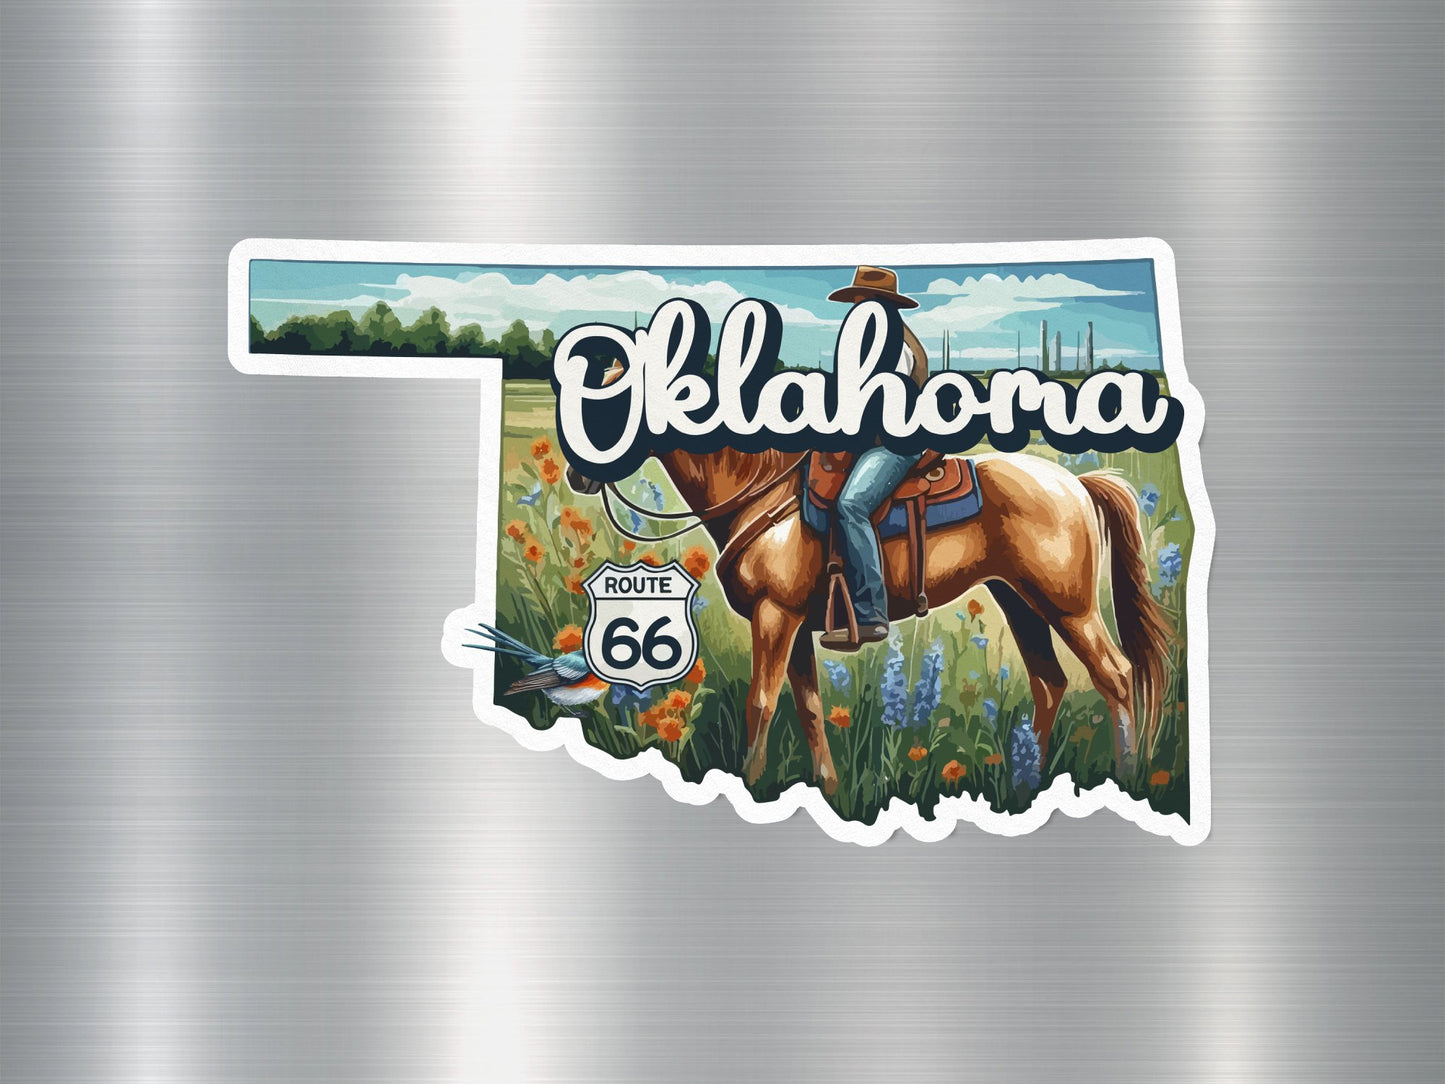 Oklahoma State Sticker